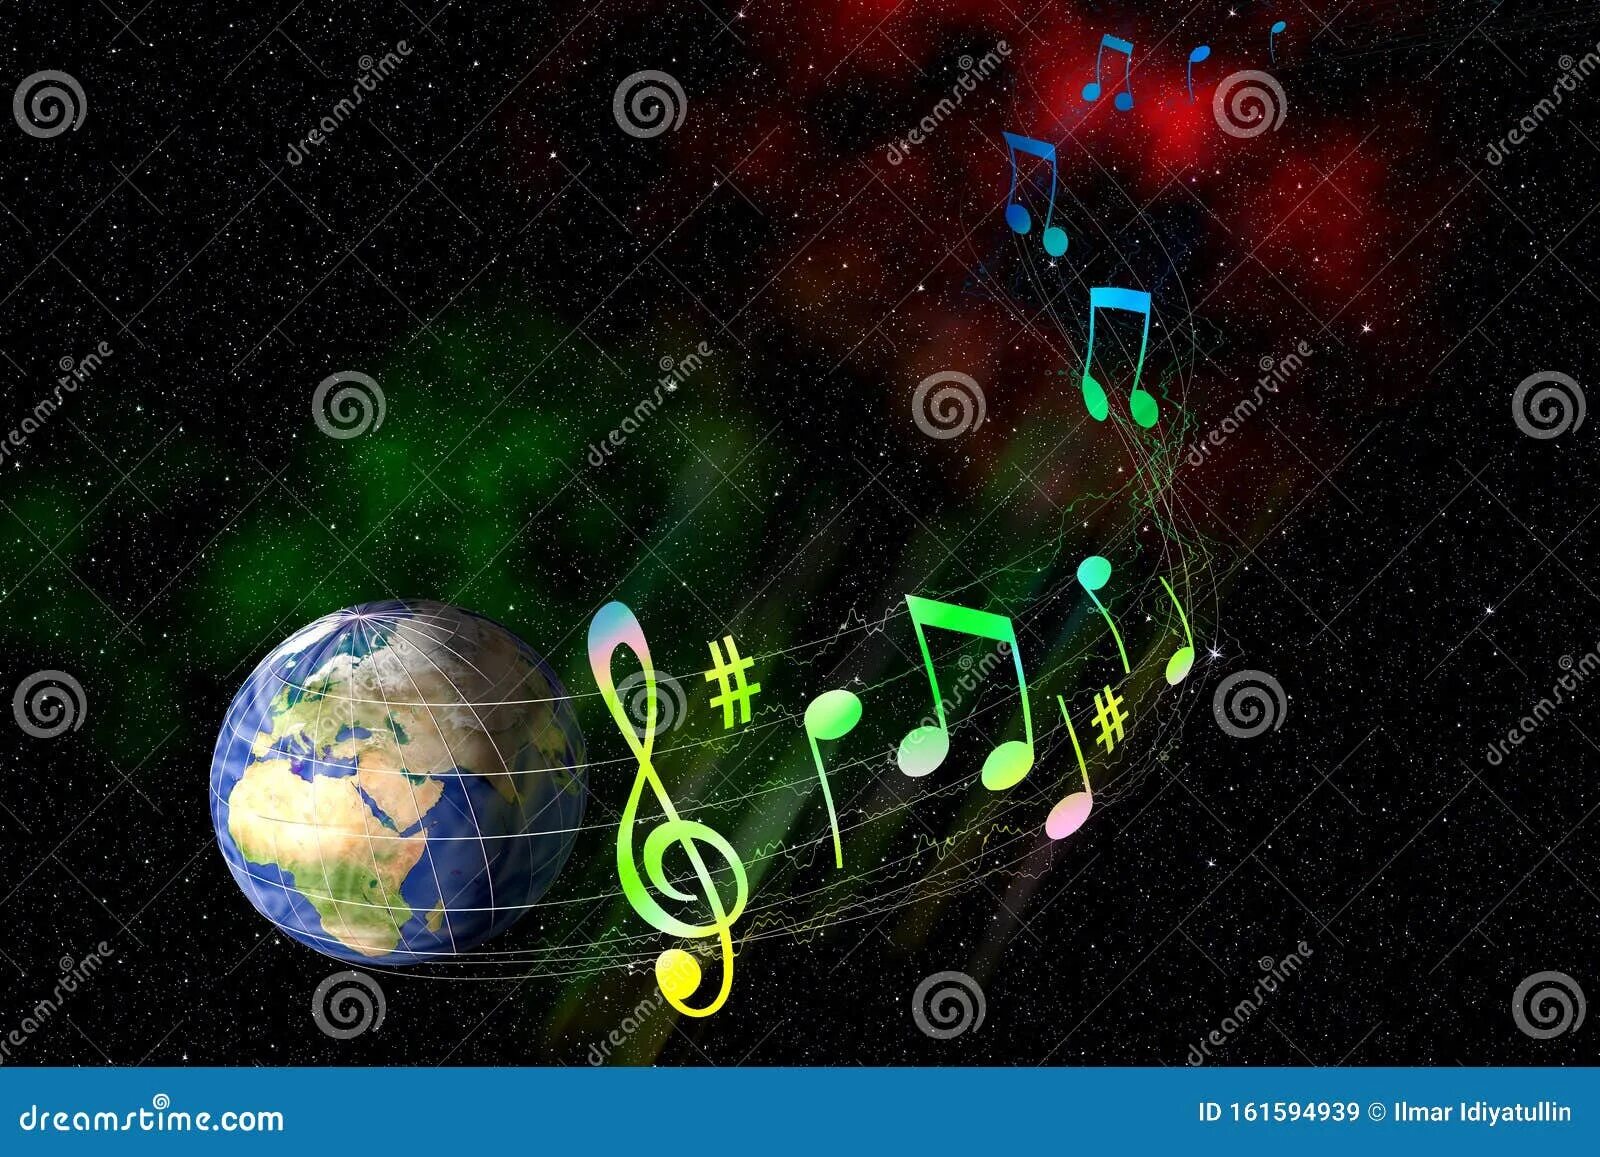 Музыкальная Планета. Космическая музыкальная Планета. Музыкальная Планета земля. Музыкальная Планета картинки.